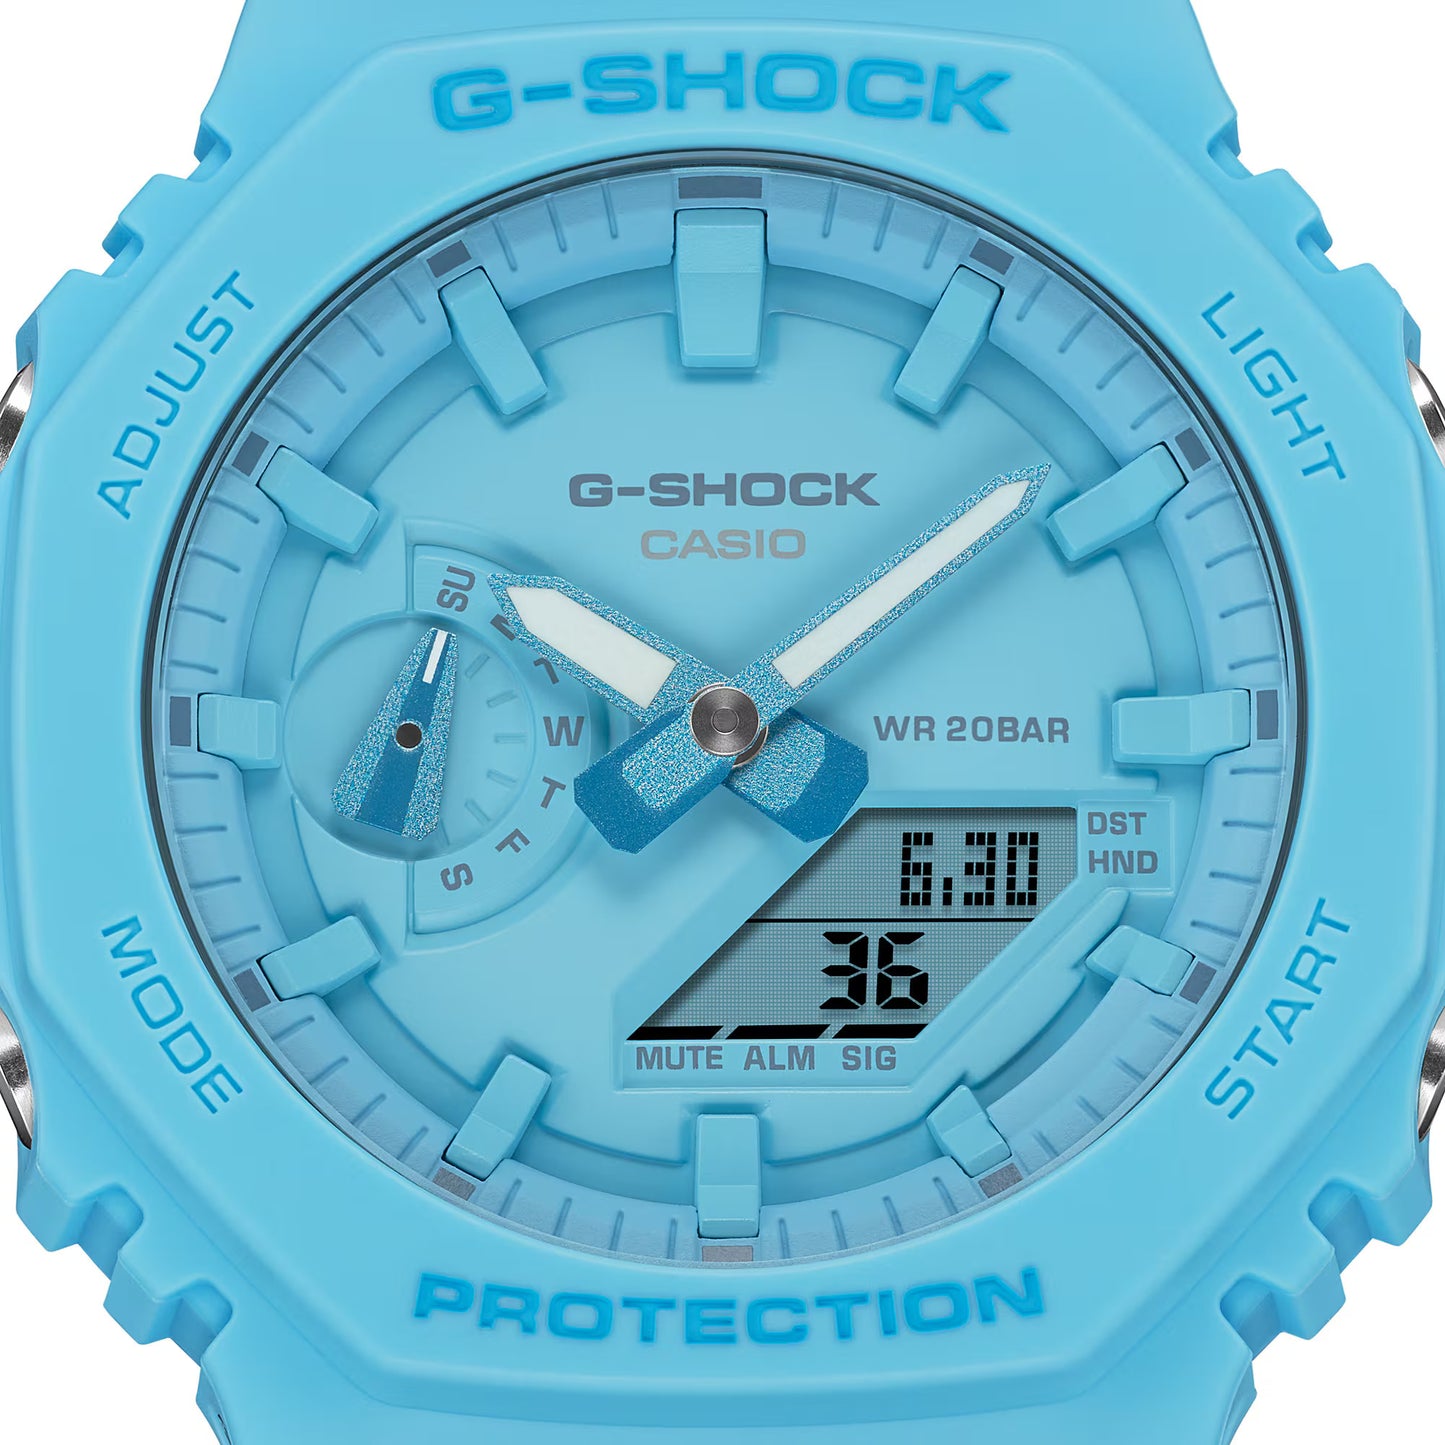 CASIO G-SHOCK GA-2100-2A2 "CASIOAK" BLUE A/D WATCH